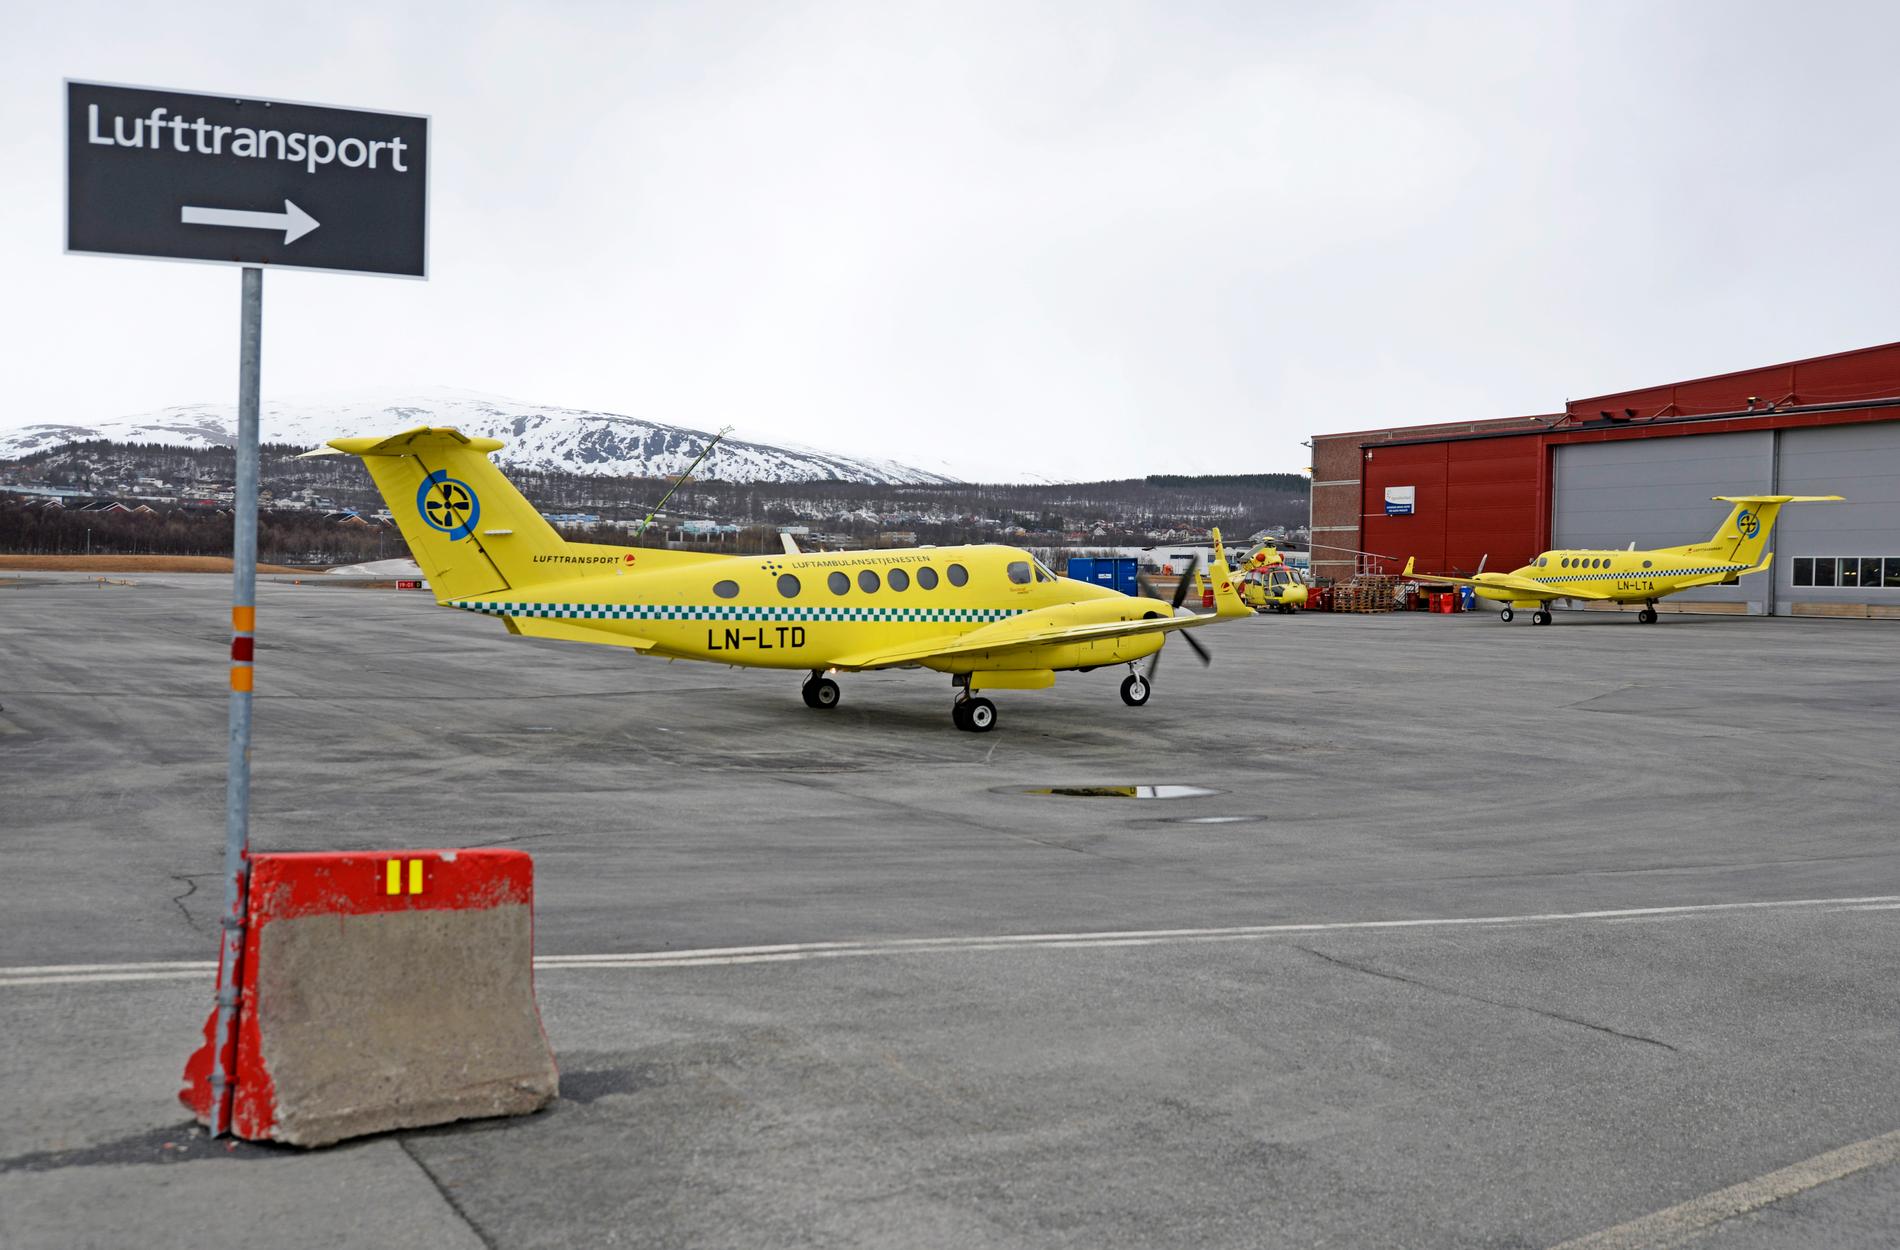 Pilotmangel har satt luftambulansetjenesten i en vanskelig situasjon. Foto: Rune Stoltz Bertinussen / NTB scanpix